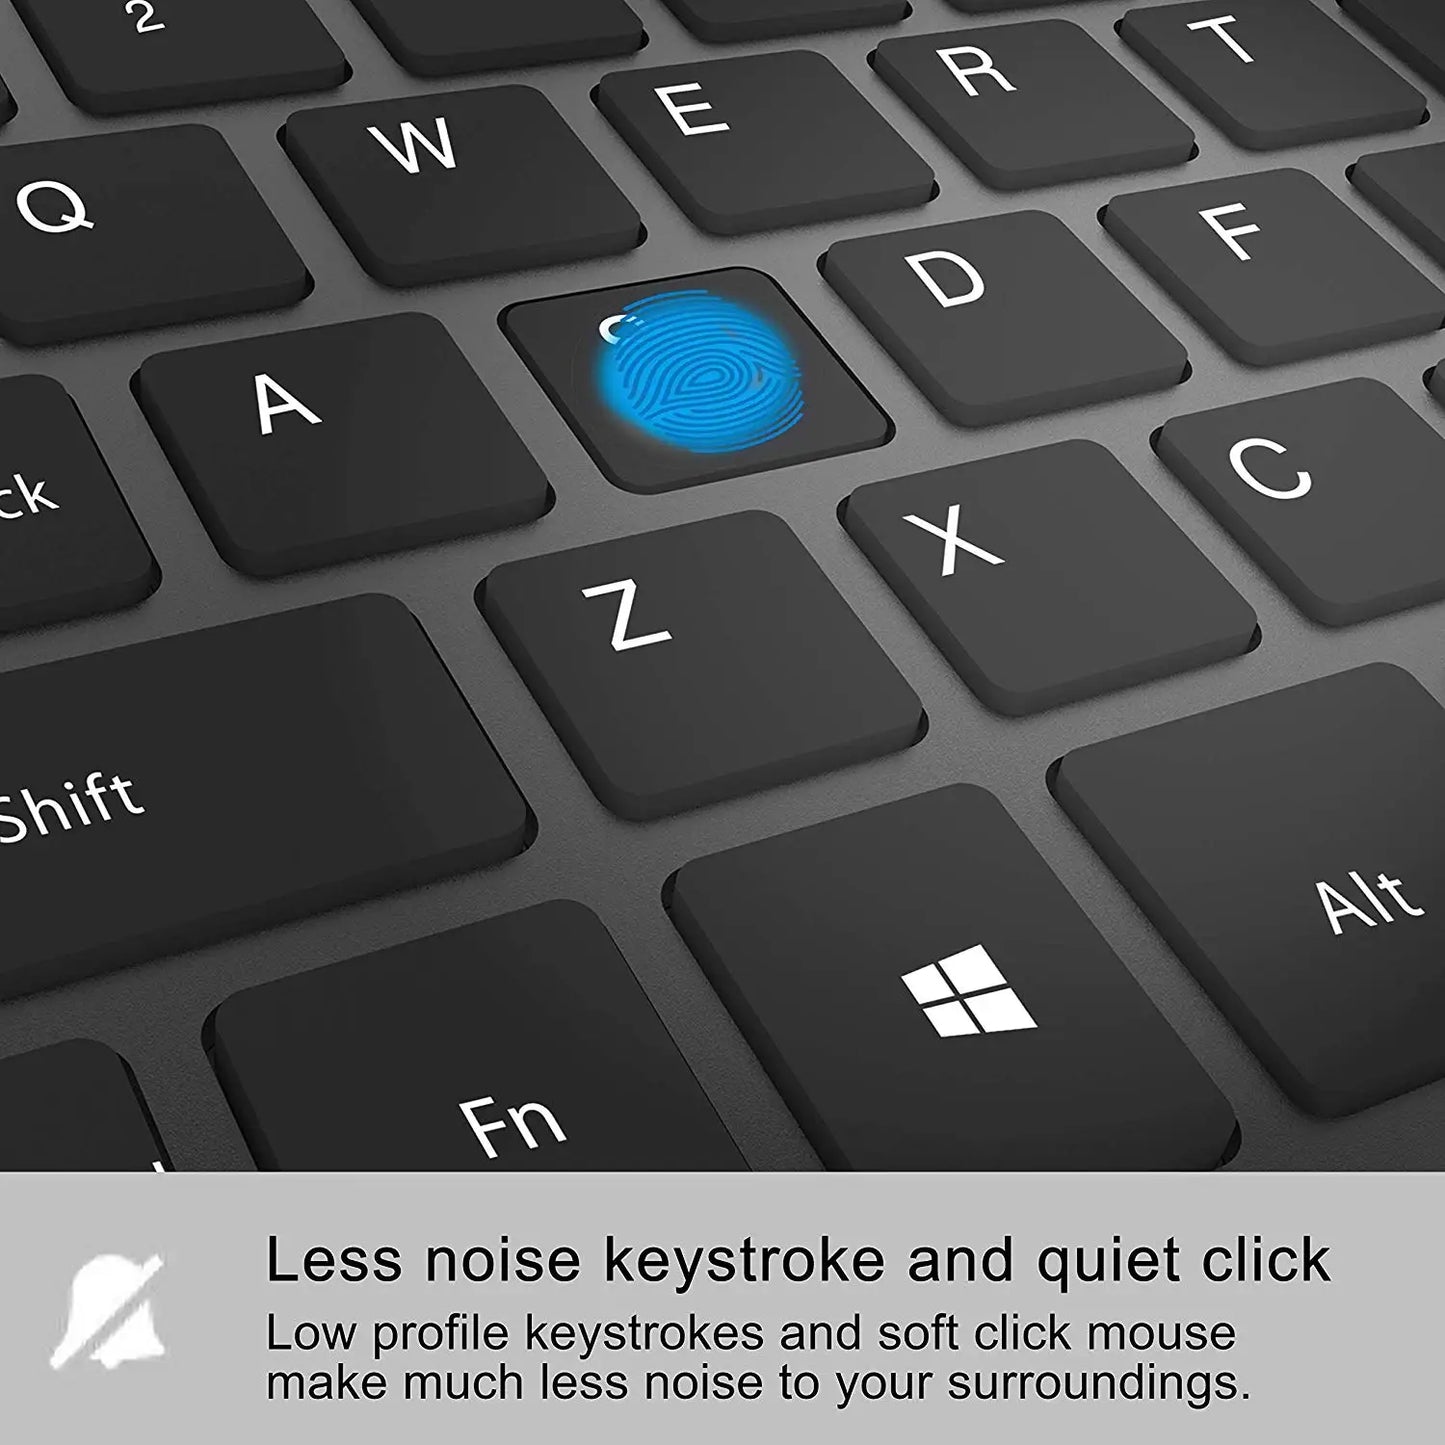 Rechargeable Wireless Keyboard